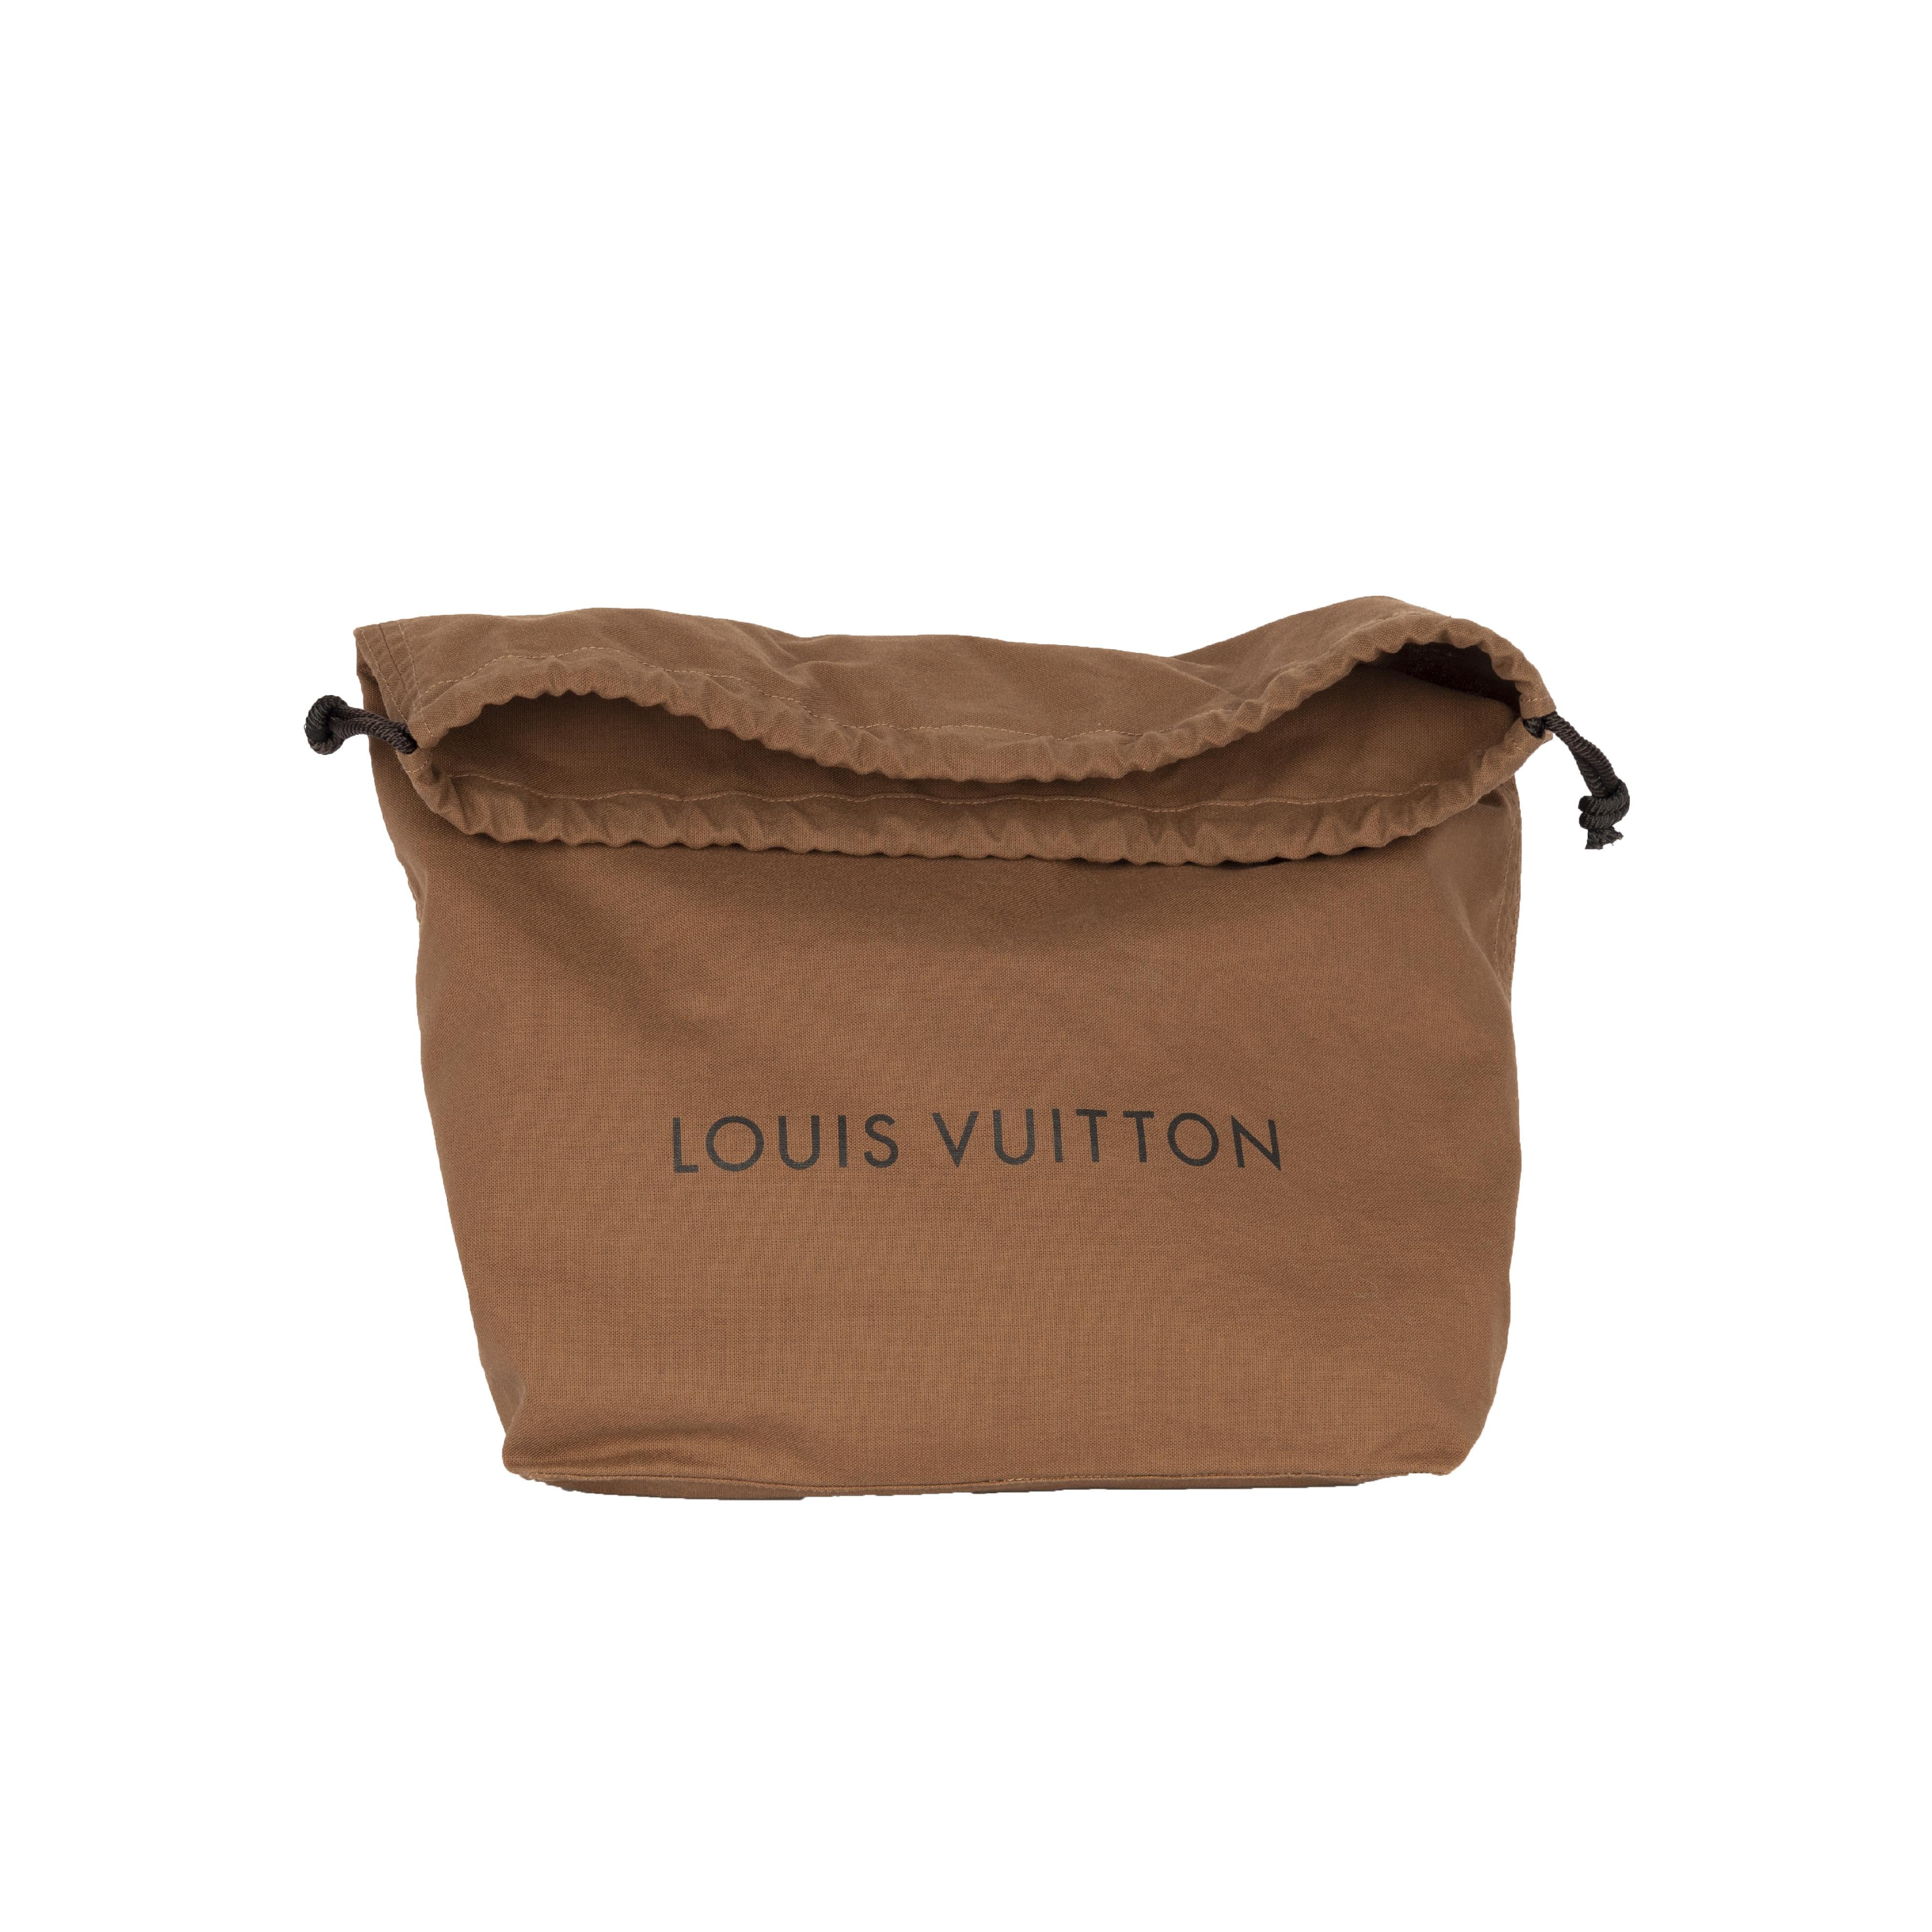 Louis Vuitton x Comme des Garçons Burned Holes Monogram Tote bag- '10s For Sale 1